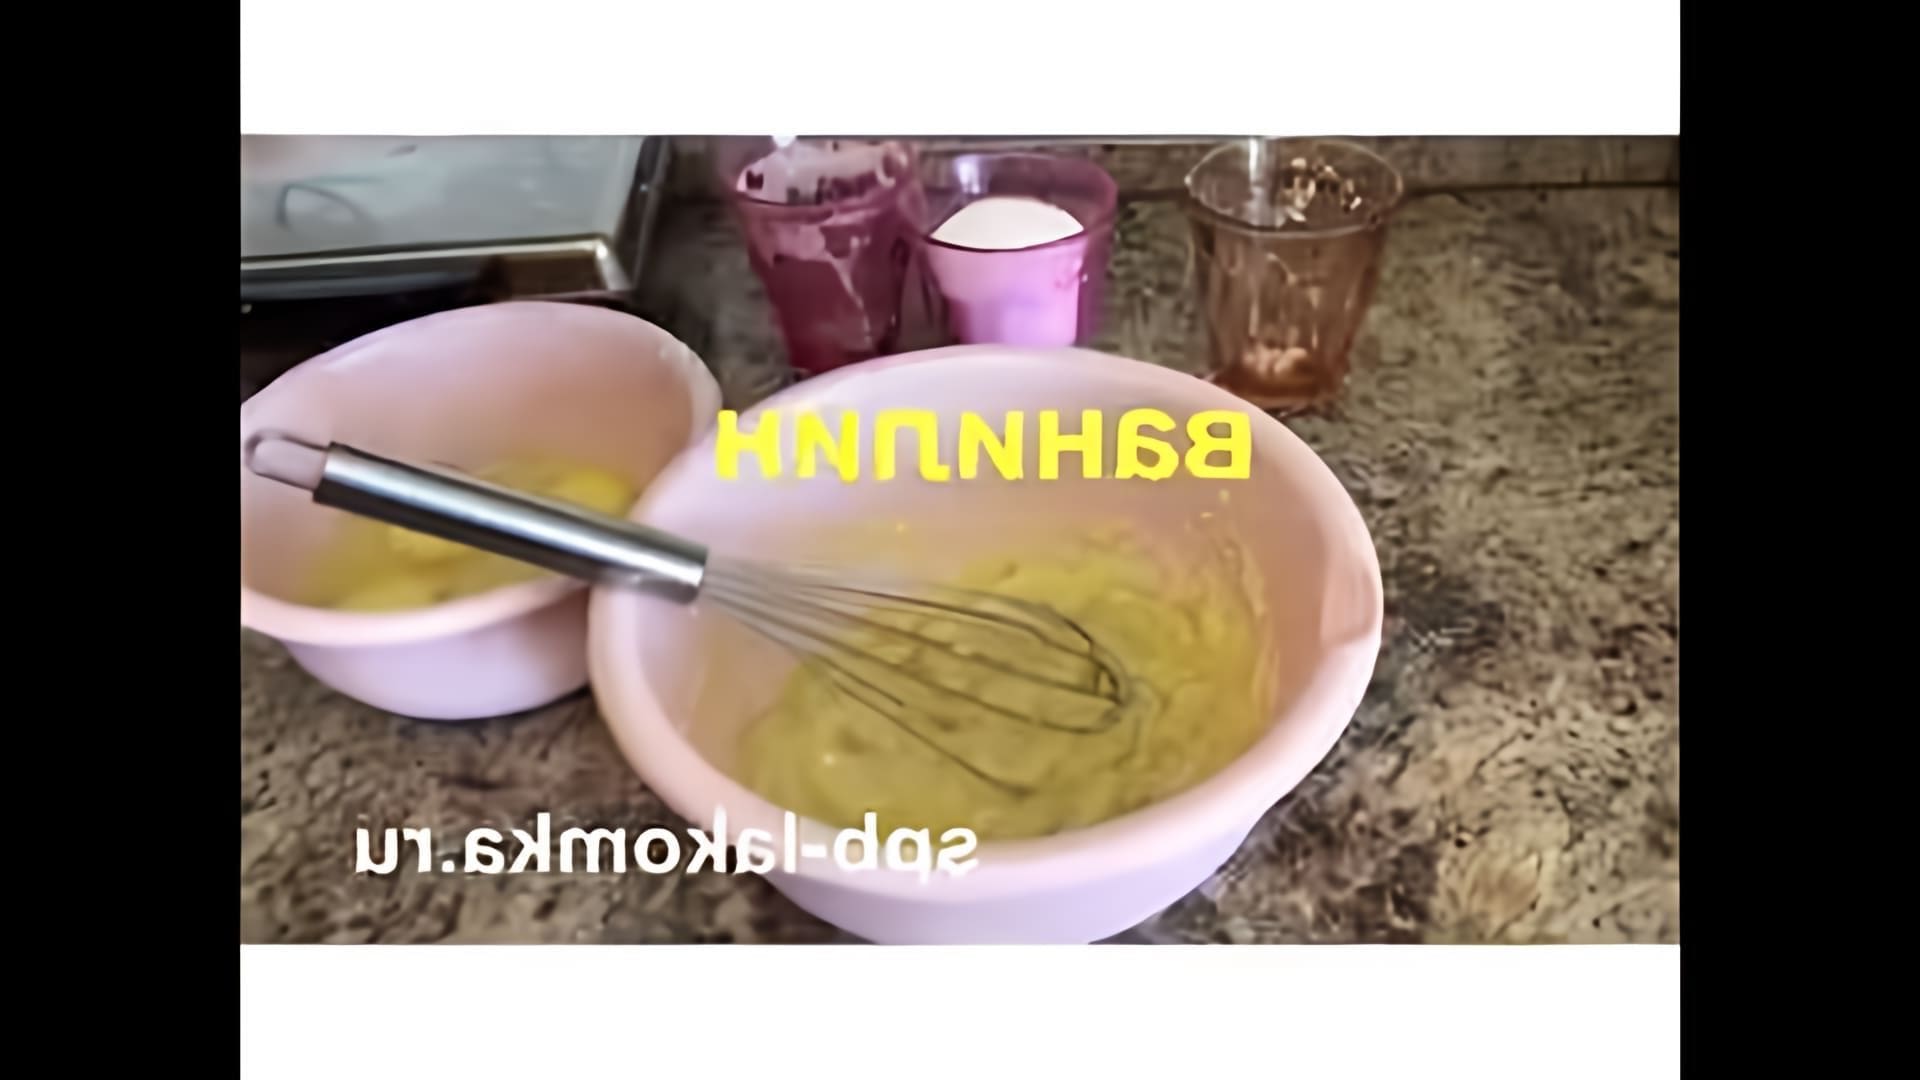 В этом видео-ролике будет показан рецепт приготовления хрустящих вафельных трубочек, который был популярен в СССР